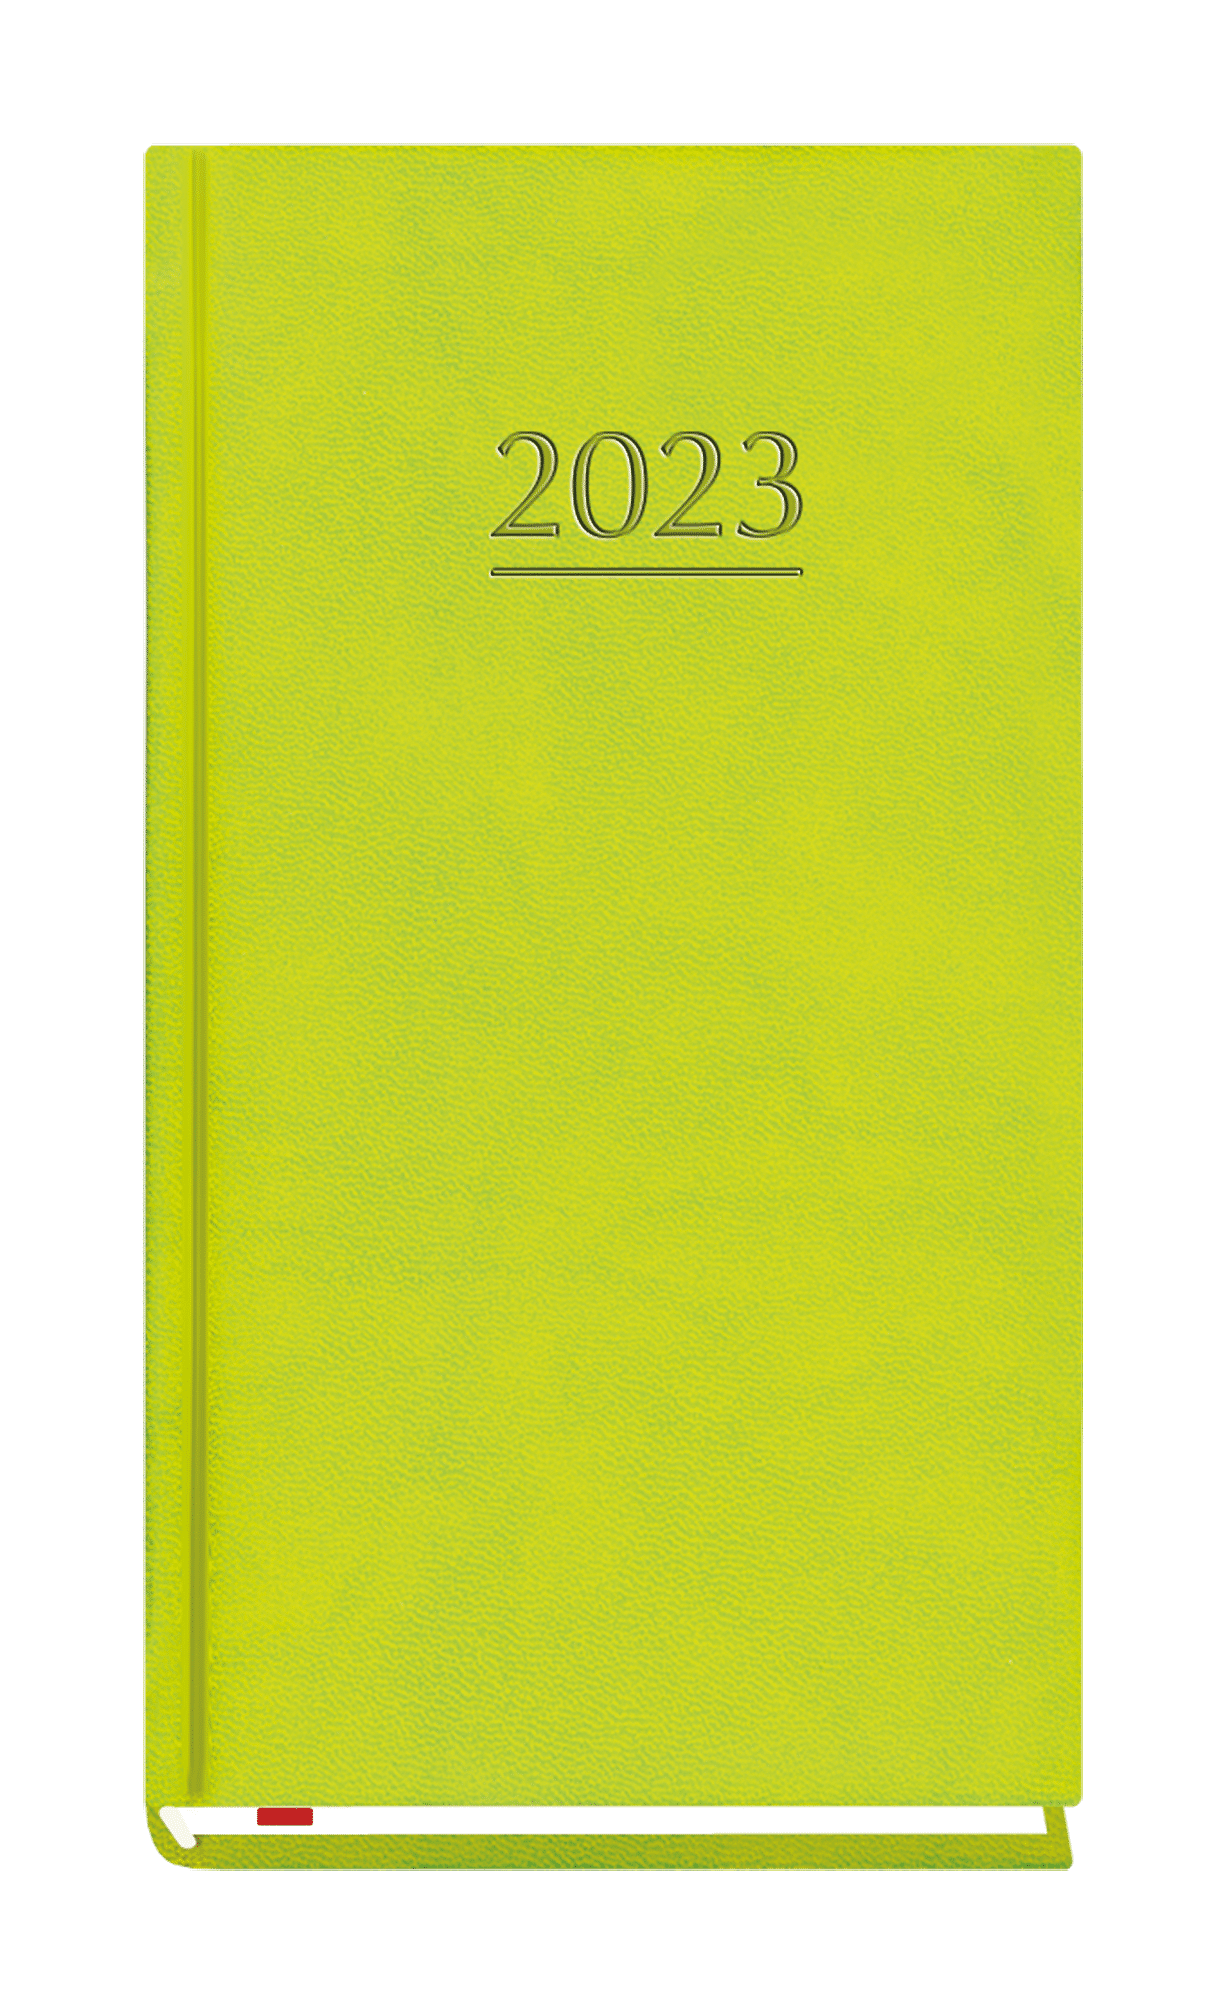 Terminarz 2023 Kieszonkowy zieleń